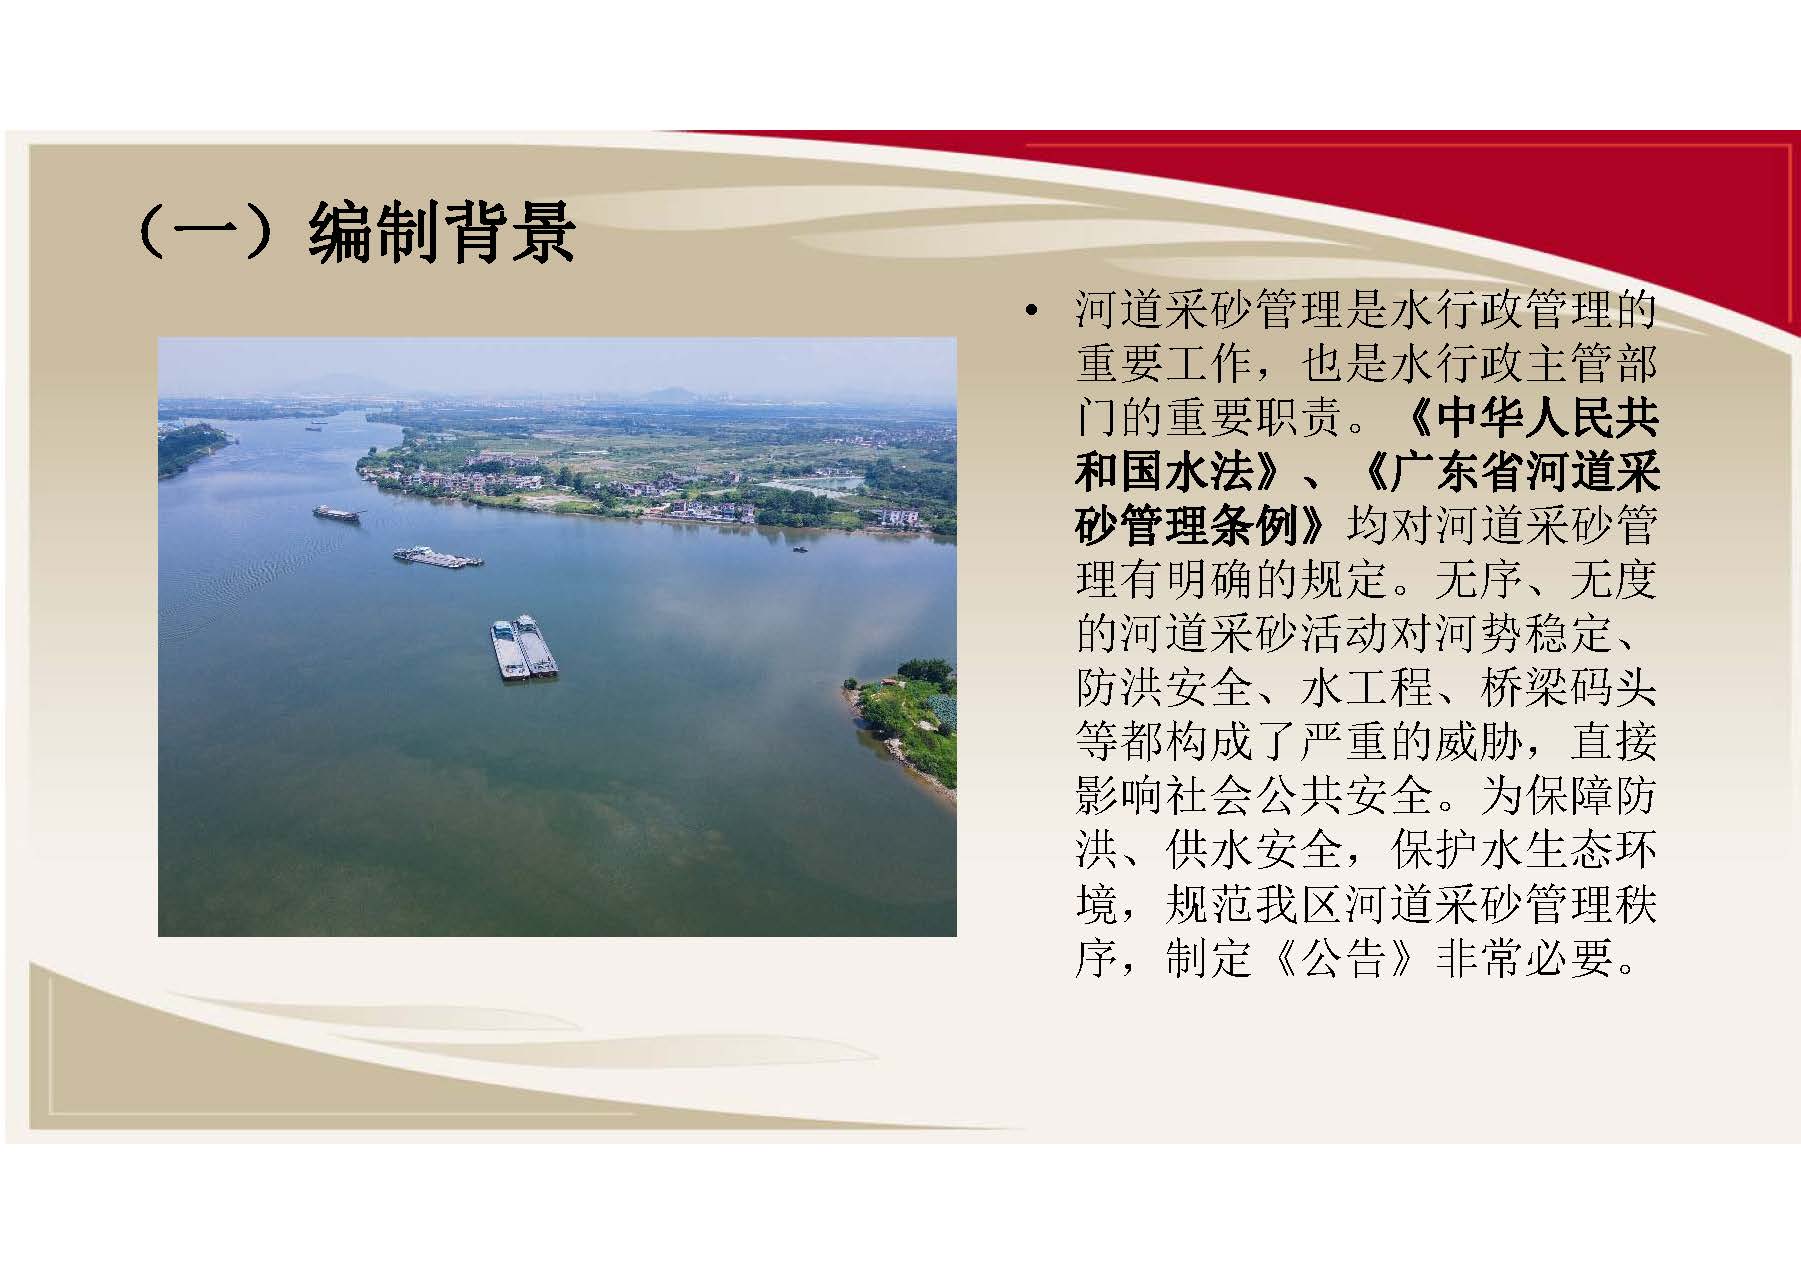 广州市增城区水务局关于印发《关于划定增城区河砂禁采区的公告》的通知（图文解读）_页面_2.jpg